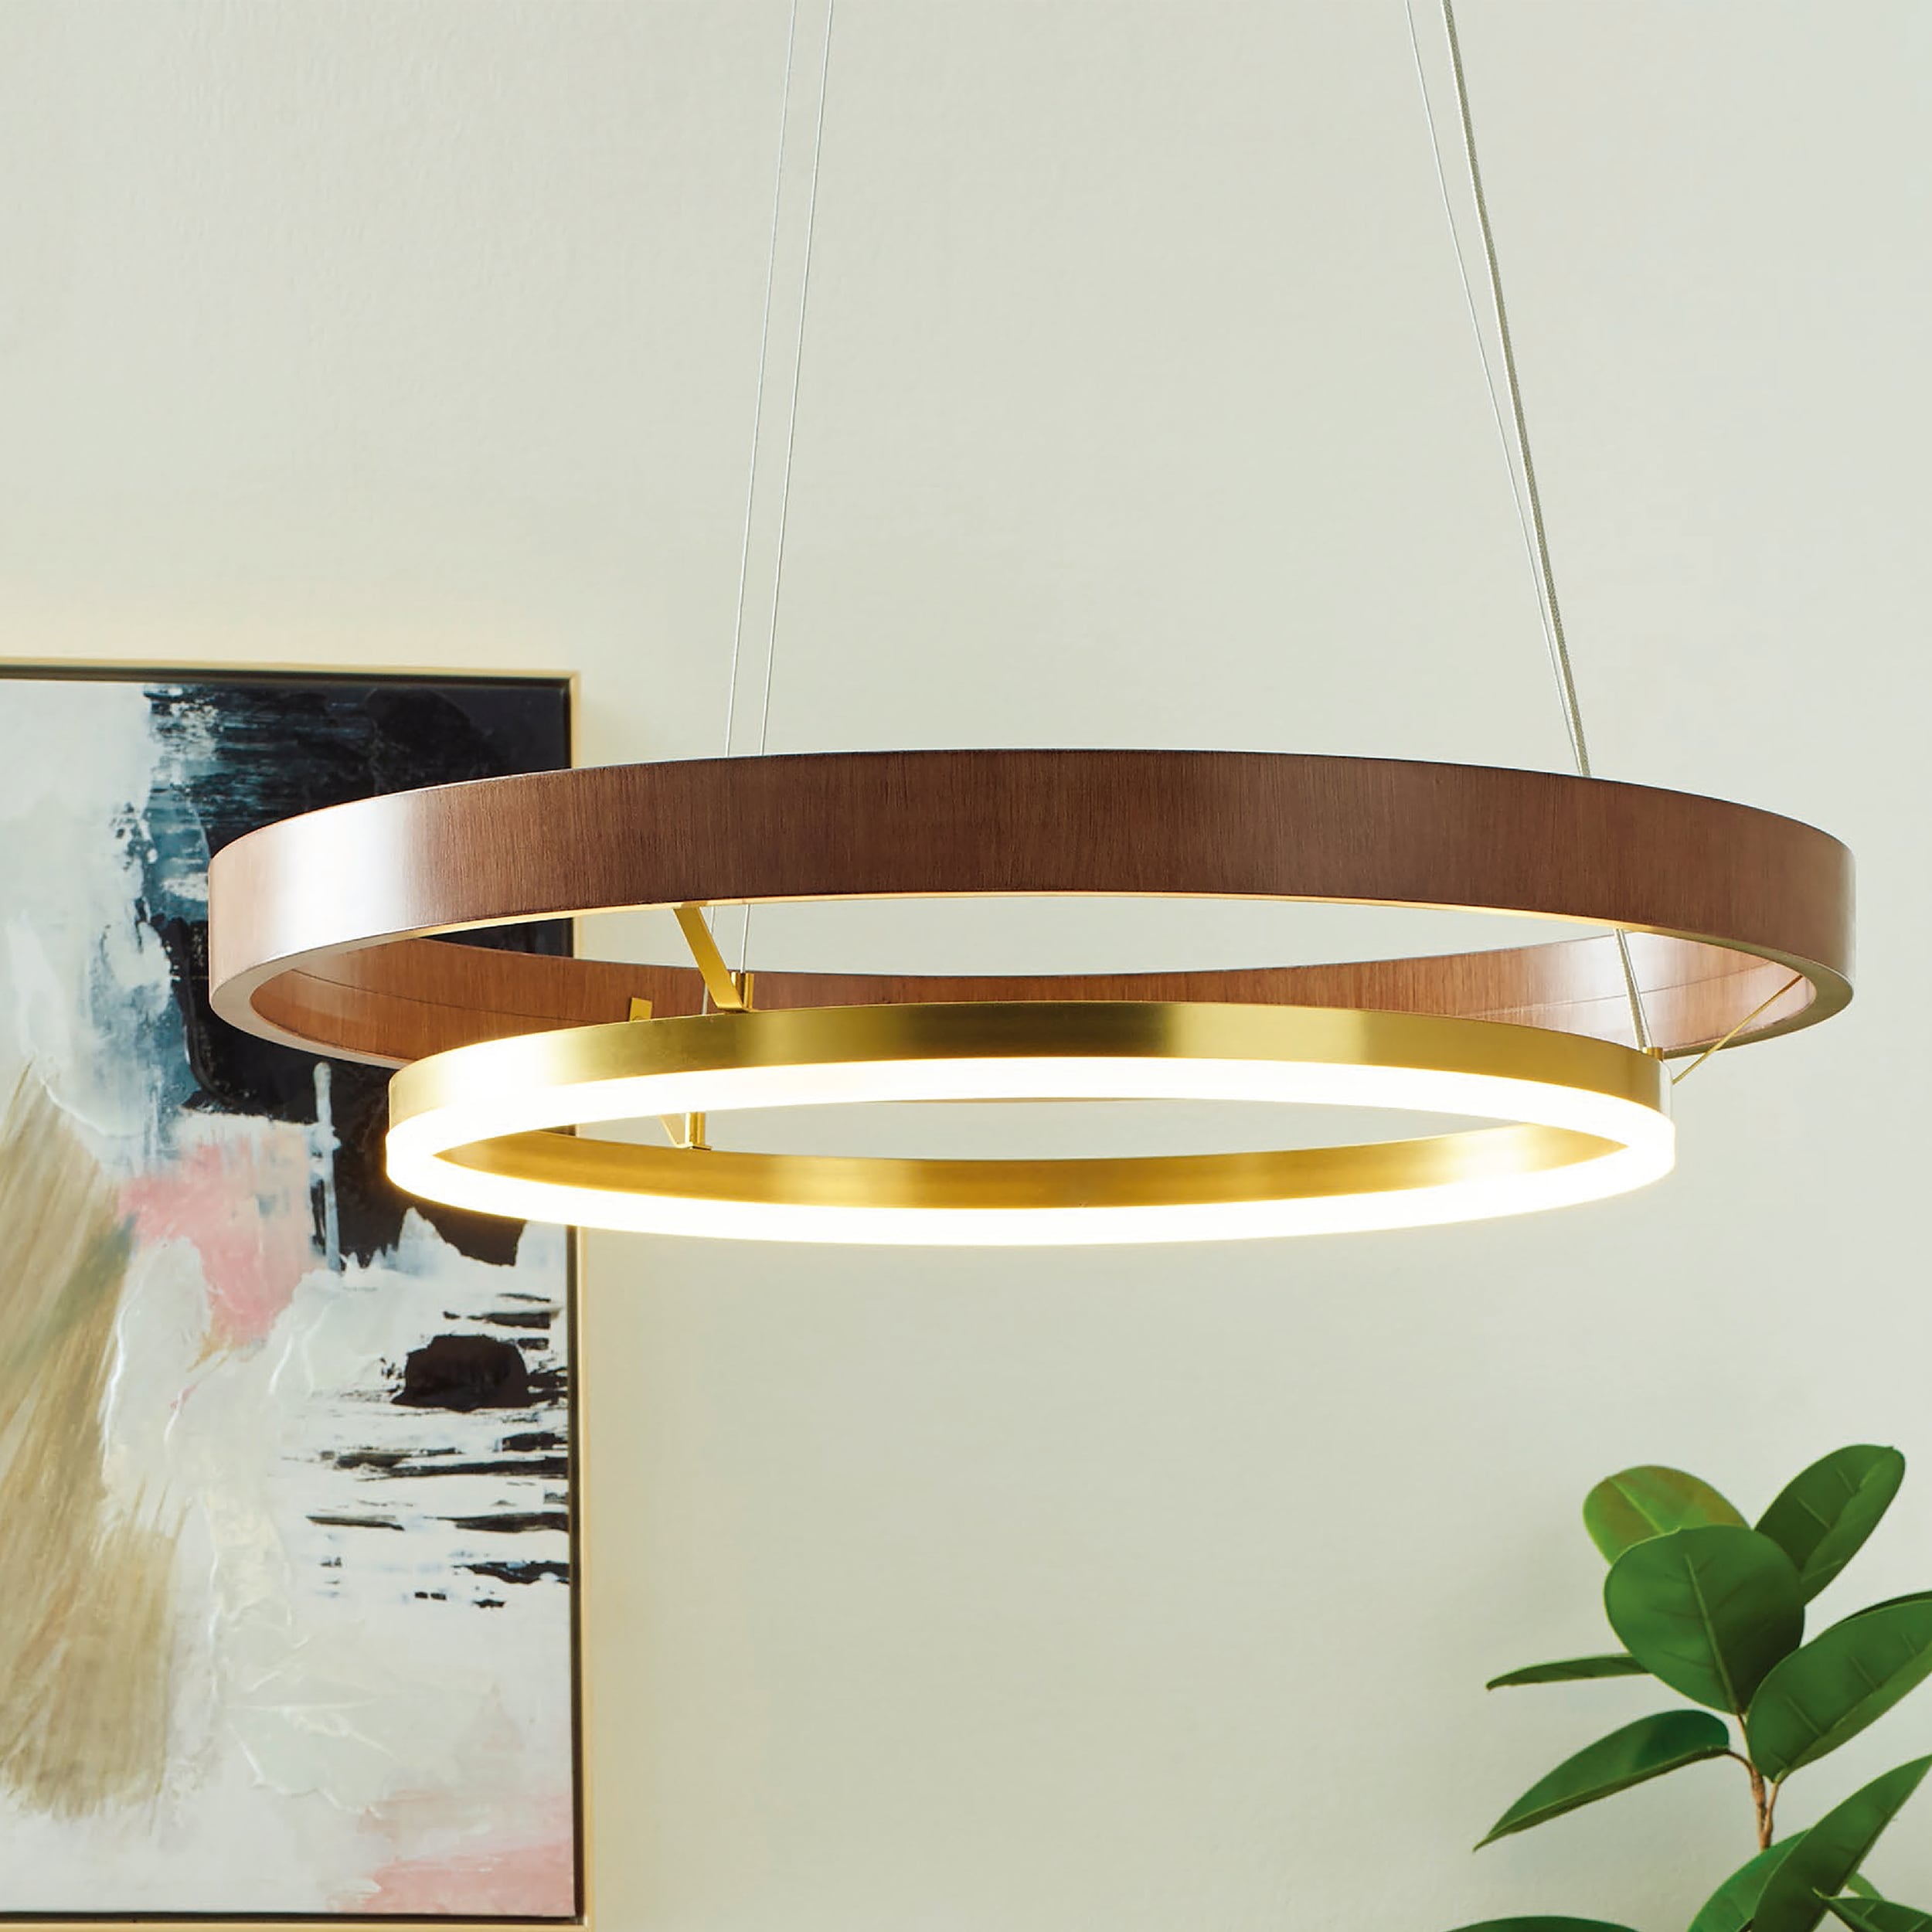 Ring chandelier: Buy Clara Smart LED Chandelier – Smartway Lighting